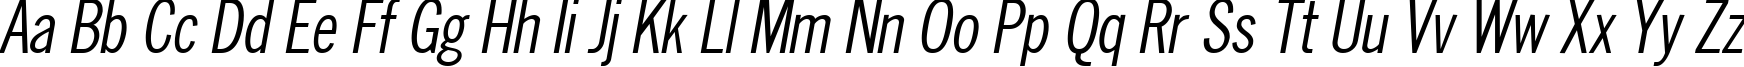 Пример написания английского алфавита шрифтом NewsCondensed Oblique